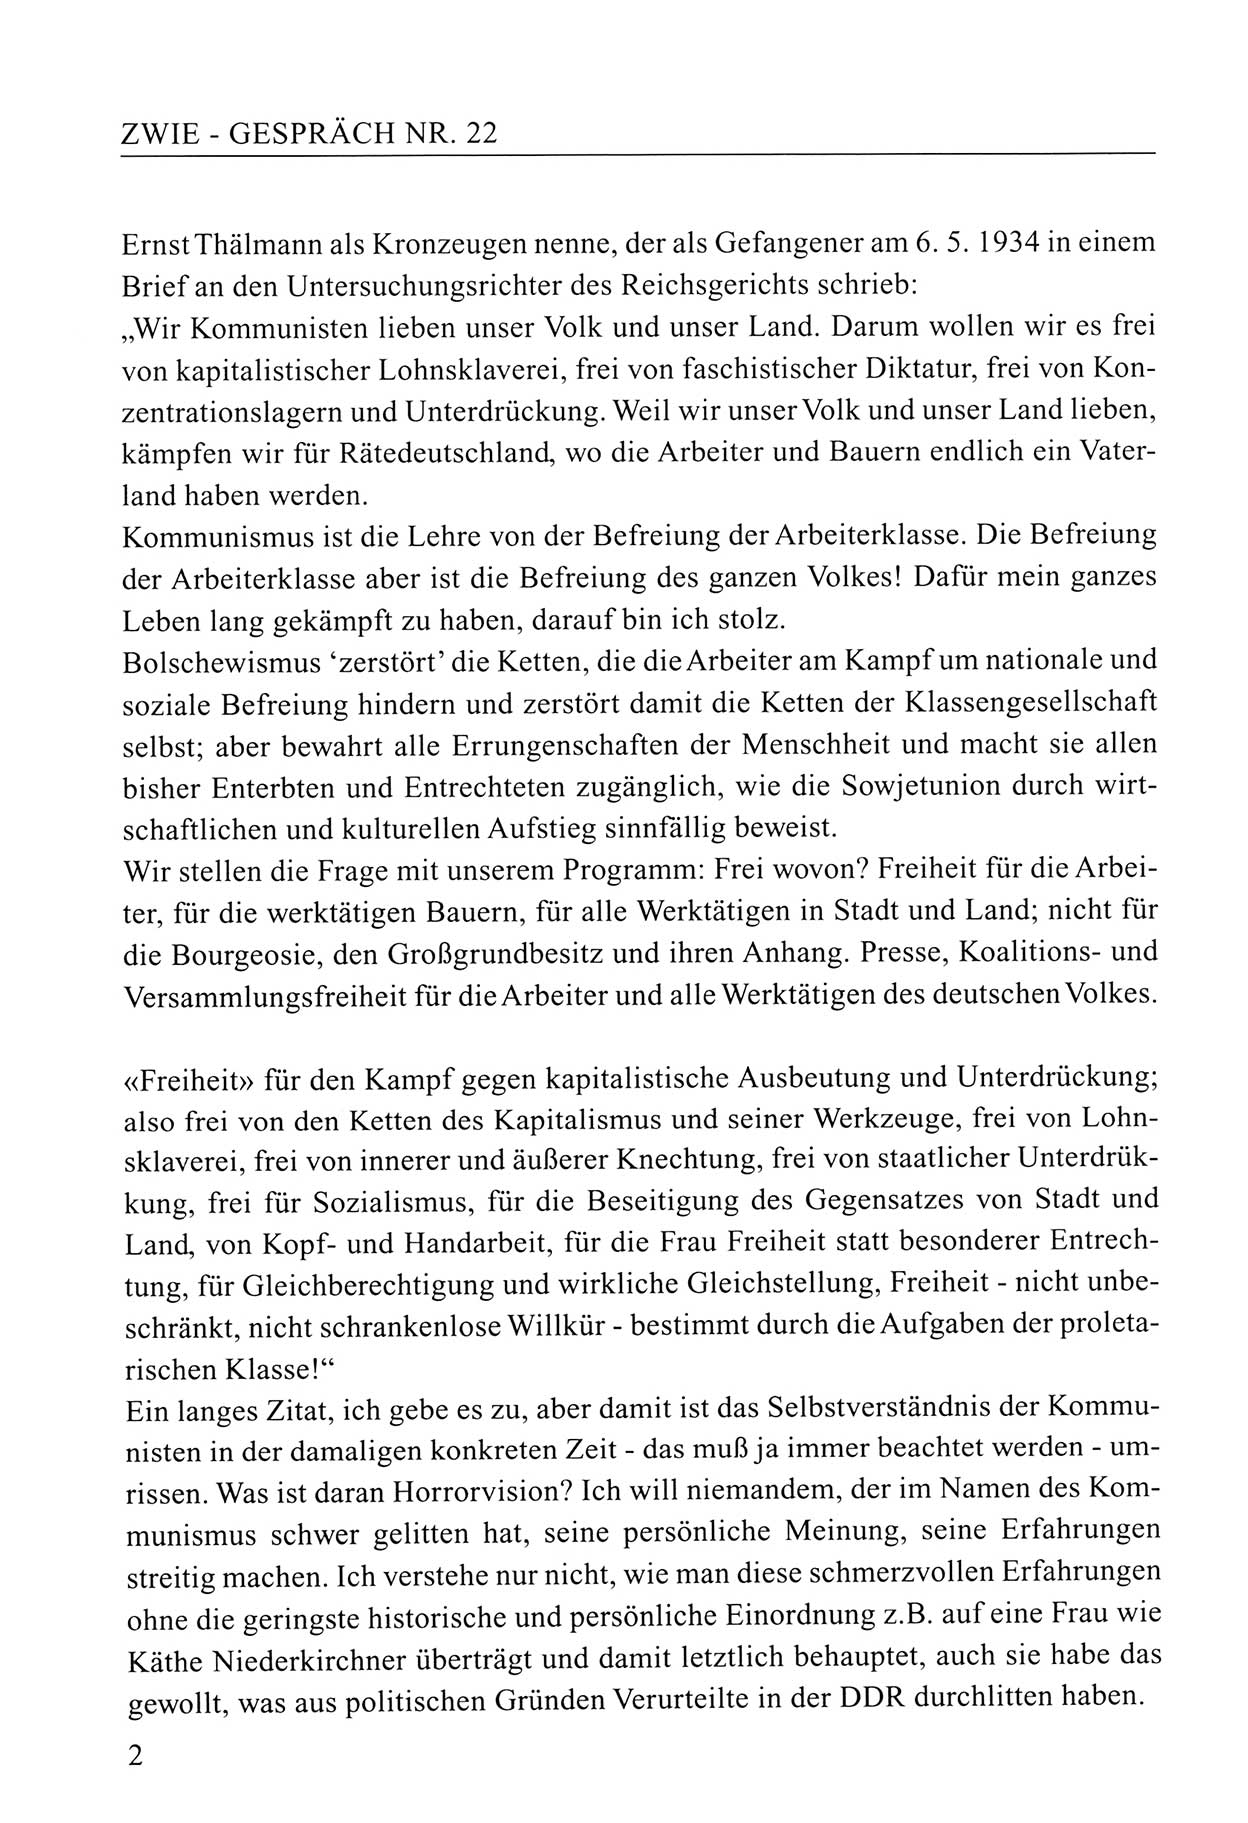 Zwie-Gespräch, Beiträge zum Umgang mit der Staatssicherheits-Vergangenheit [Deutsche Demokratische Republik (DDR)], Ausgabe Nr. 22, Berlin 1994, Seite 2 (Zwie-Gespr. Ausg. 22 1994, S. 2)